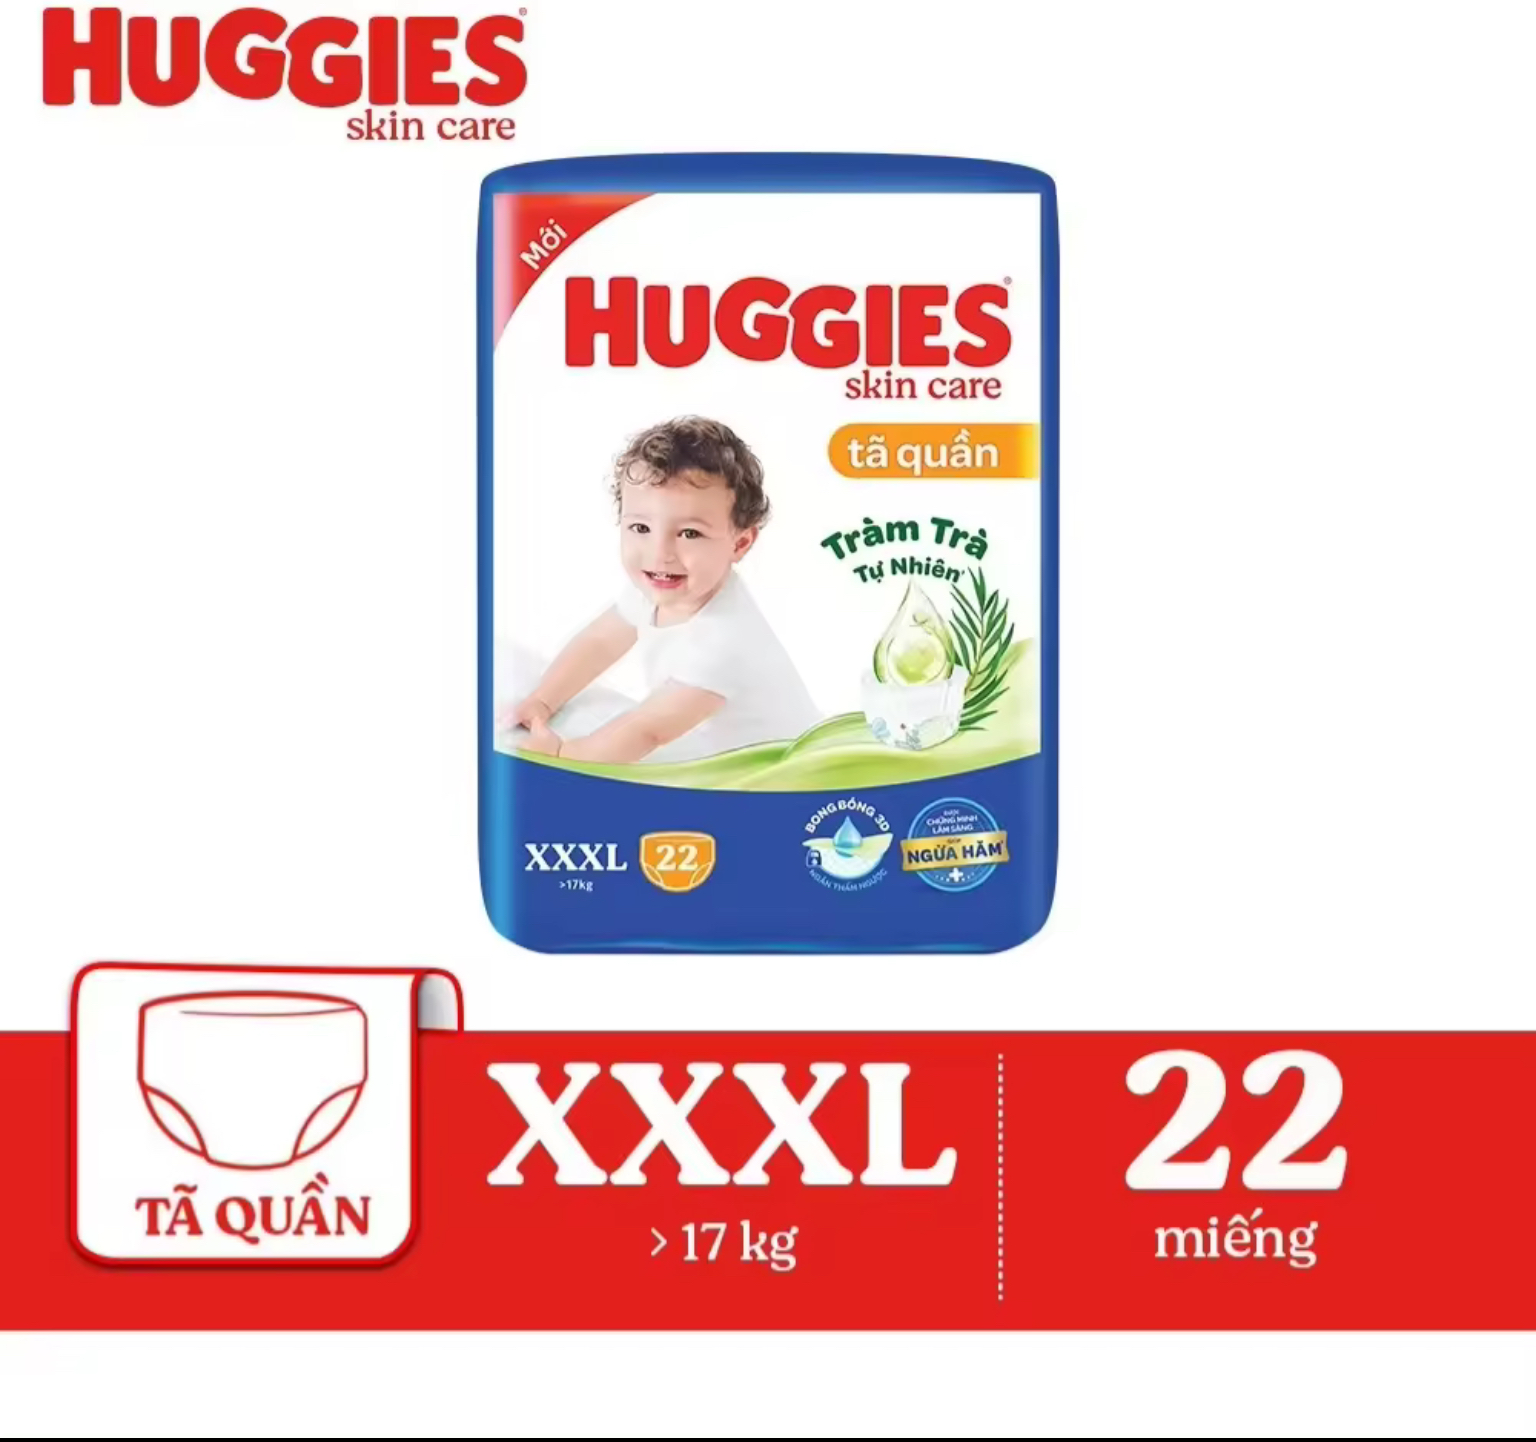 Tã quần Huggies XXXL22 Tràm trà tự nhiên, ngừa hăm - Tã bỉm quần Huggies trẻ em